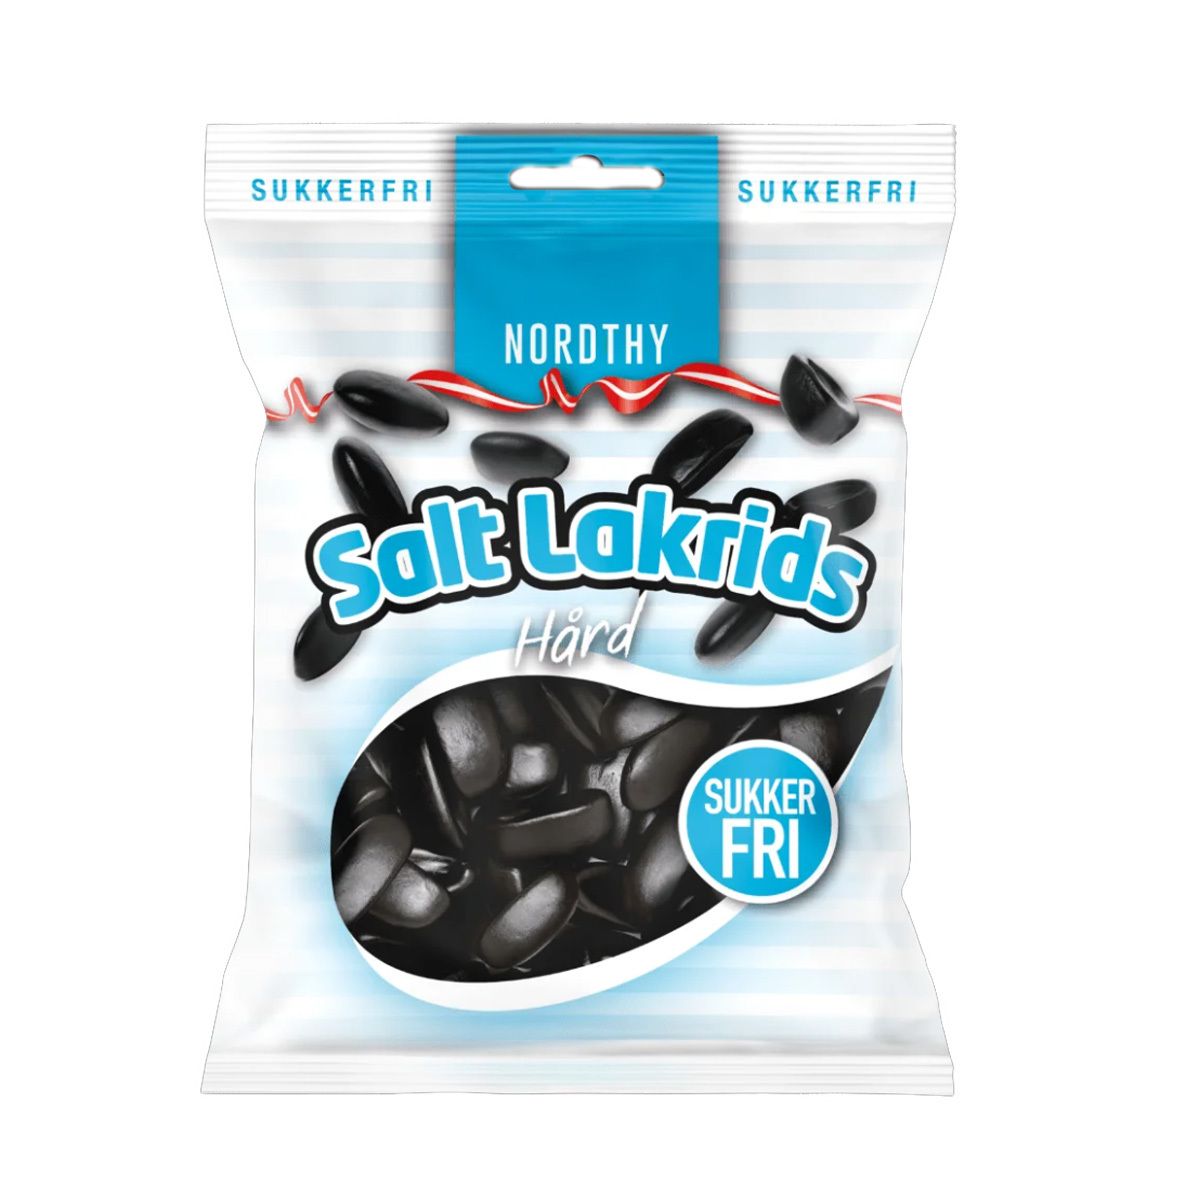 at lege stof etikette Nordthy Sukkerfri Salt Lakrids Hård - 60 g - Med24.dk